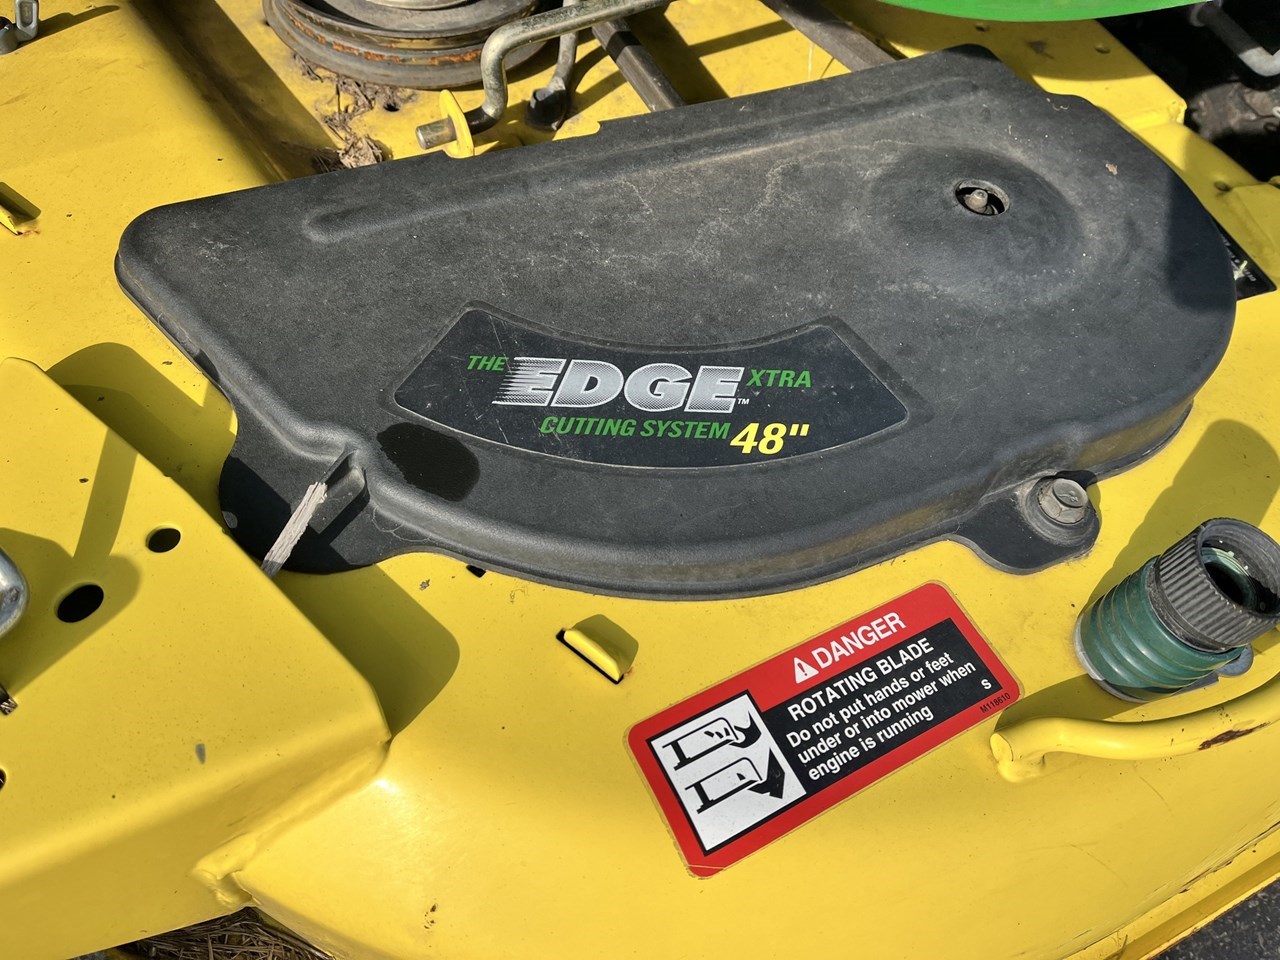 2014 John Deere X540 Lawn Mower For Sale